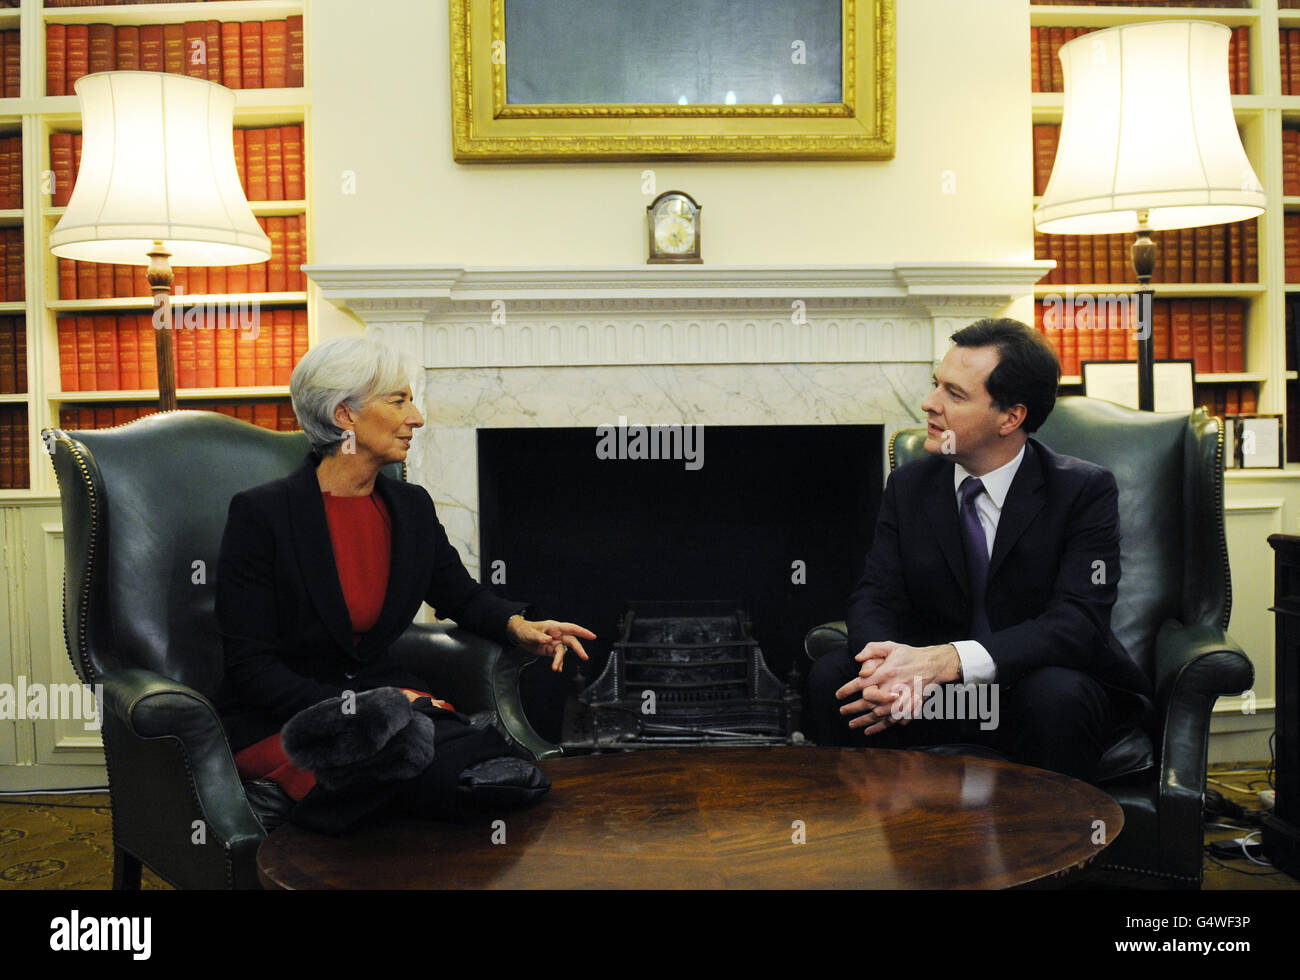 El Canciller George Osborne se reúne con la Presidenta del Fondo Monetario Internacional Christine Lagarde (izquierda) en 11 Downing Street, Londres. Foto de stock